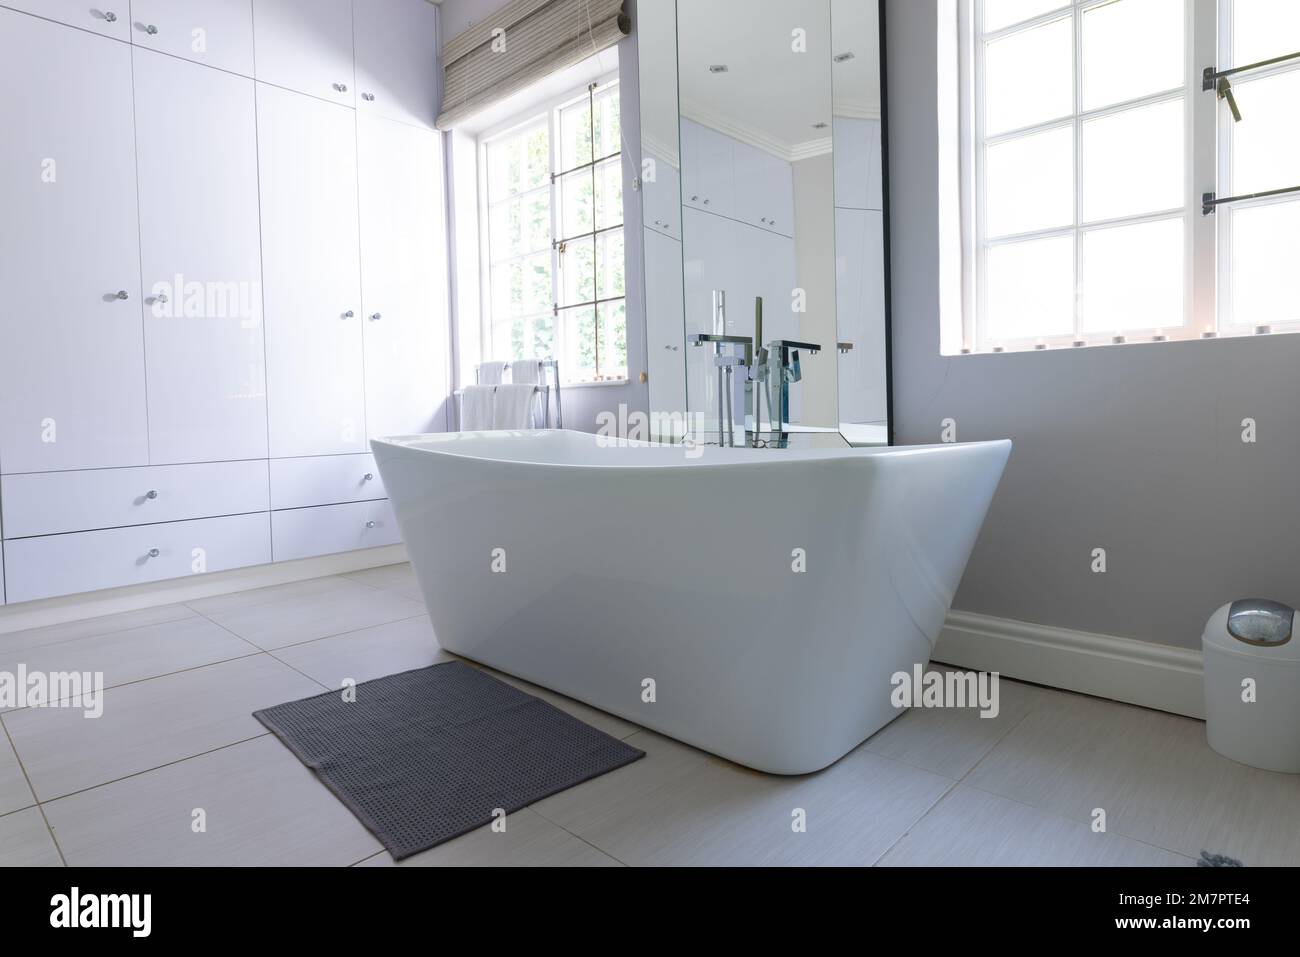 Freistehende Badewanne in luxuriösem, modernem Badezimmer zu Hause, mit Kopierbereich Stockfoto